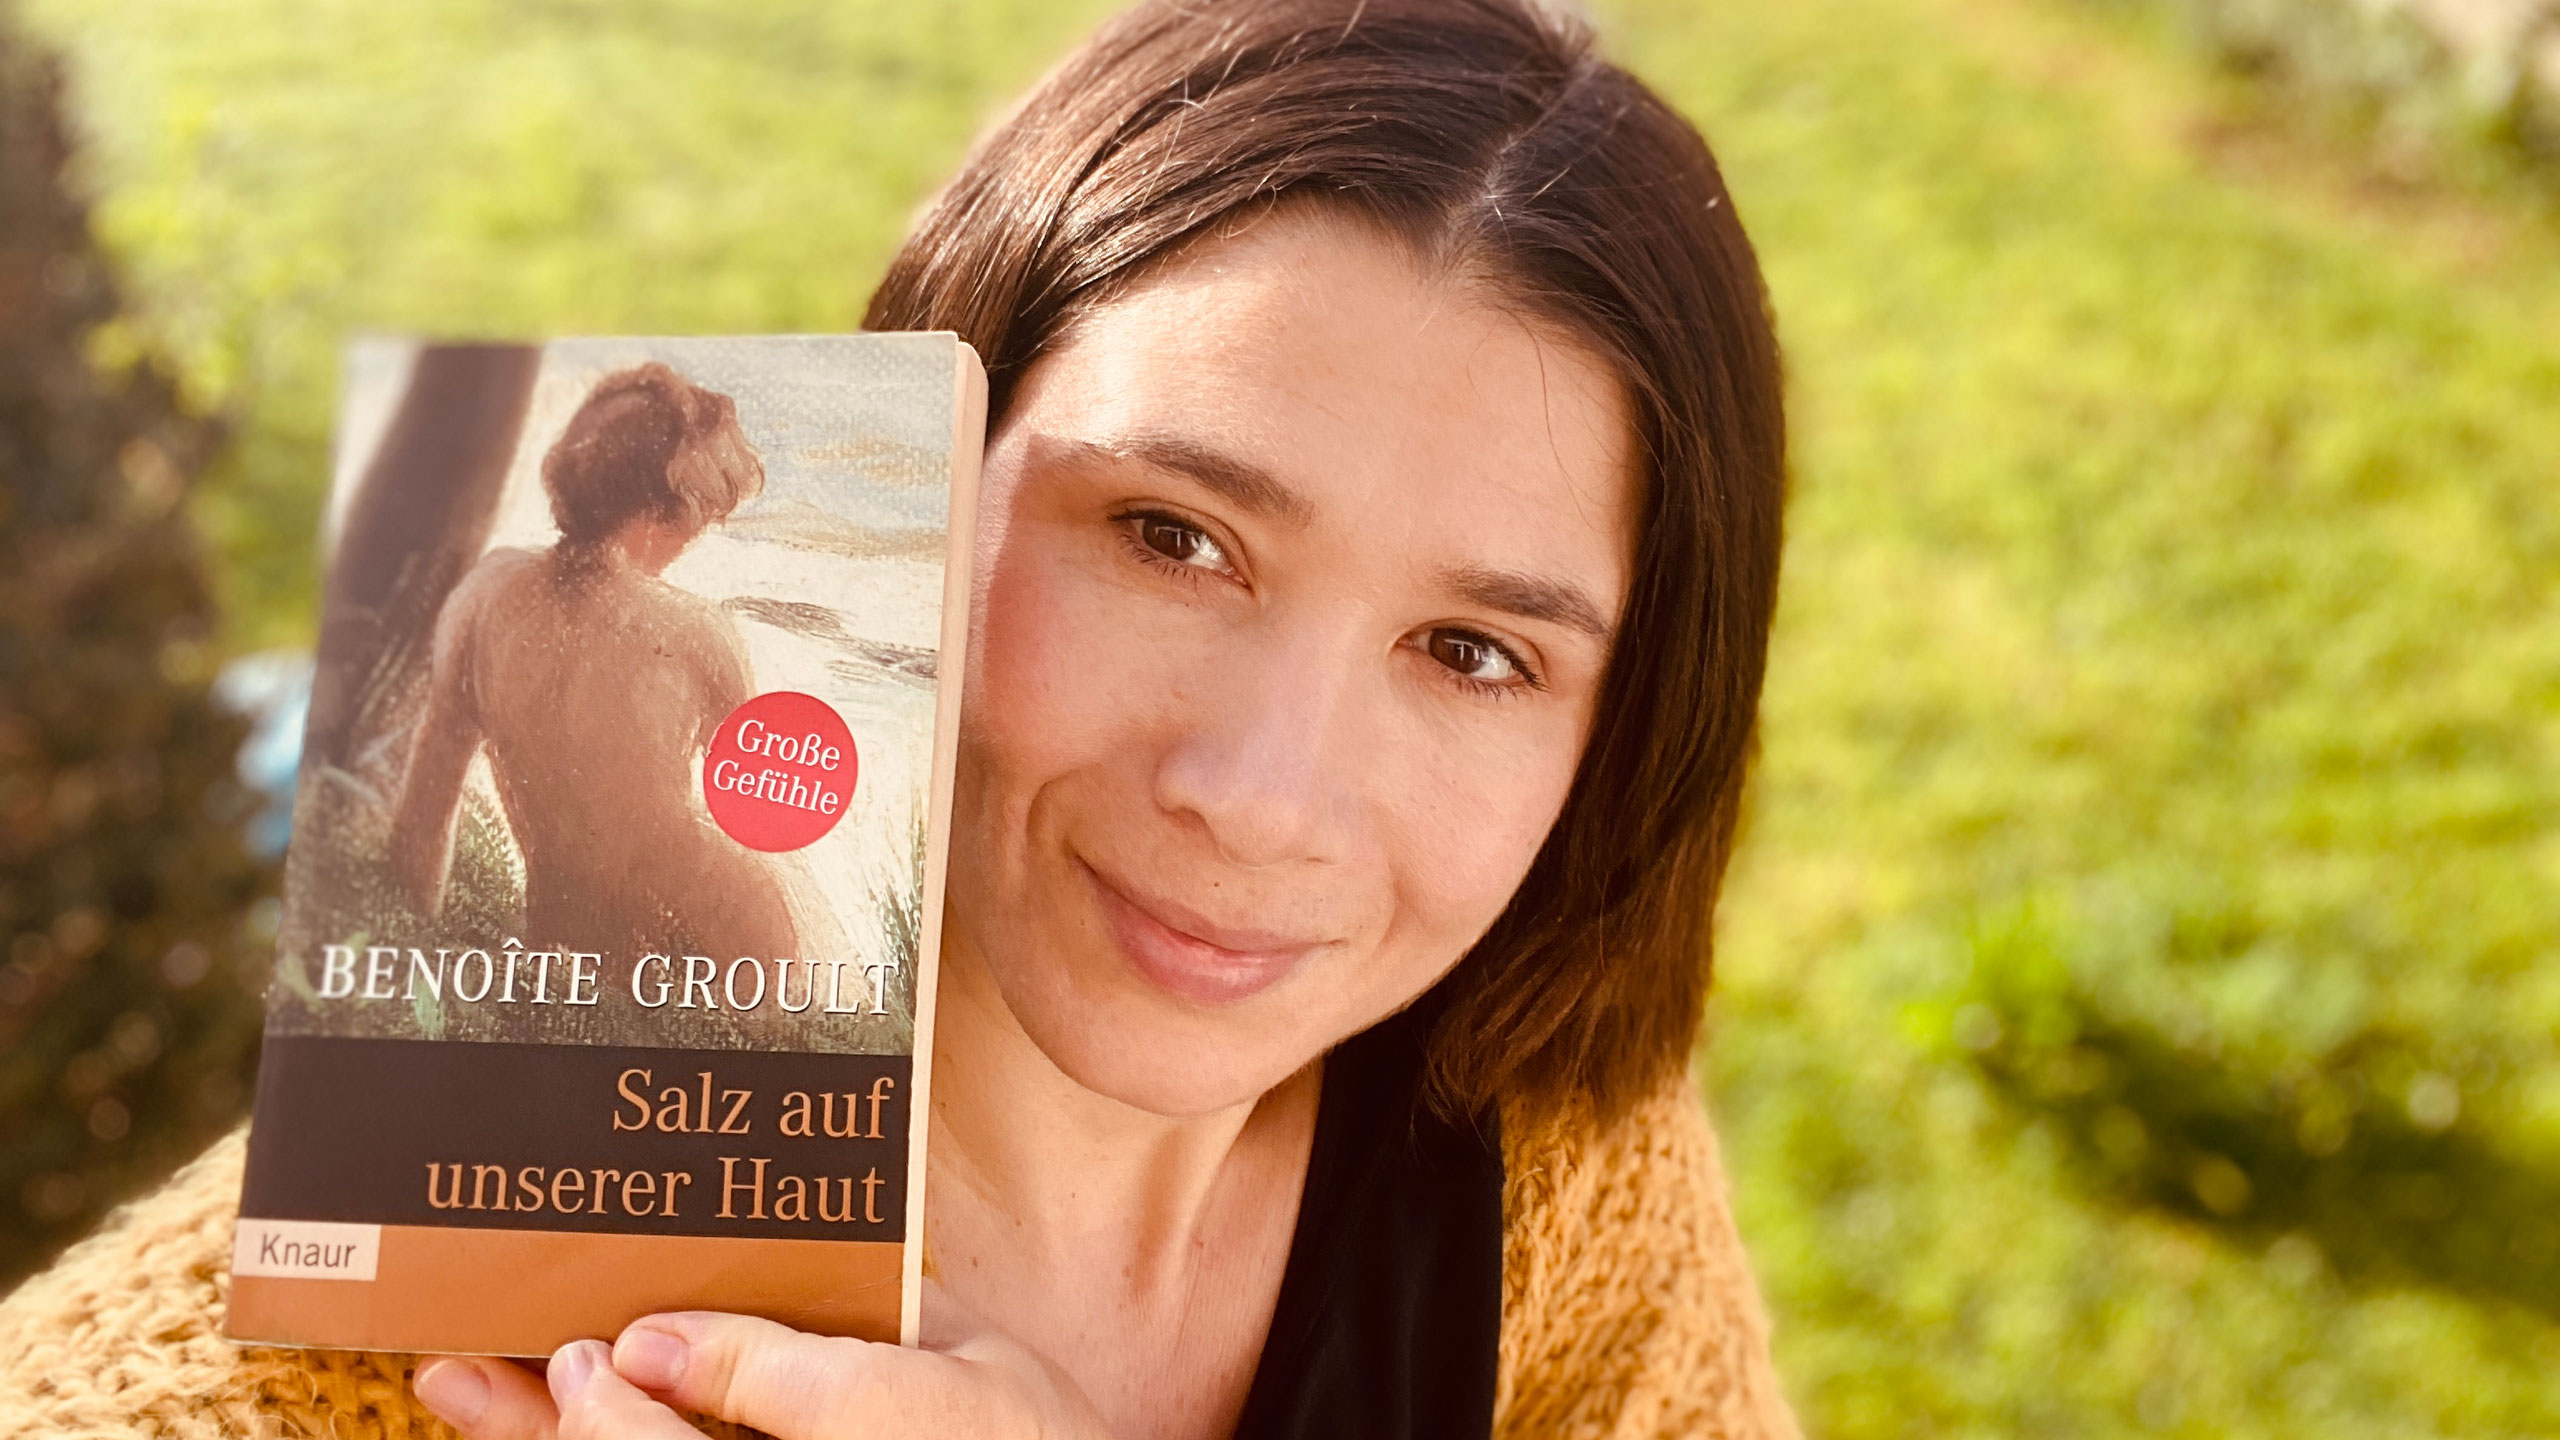 Literaturredakteurin Theresa Hübner mit dem Buch "Salz auf unserer Haut" von Benoite Groult